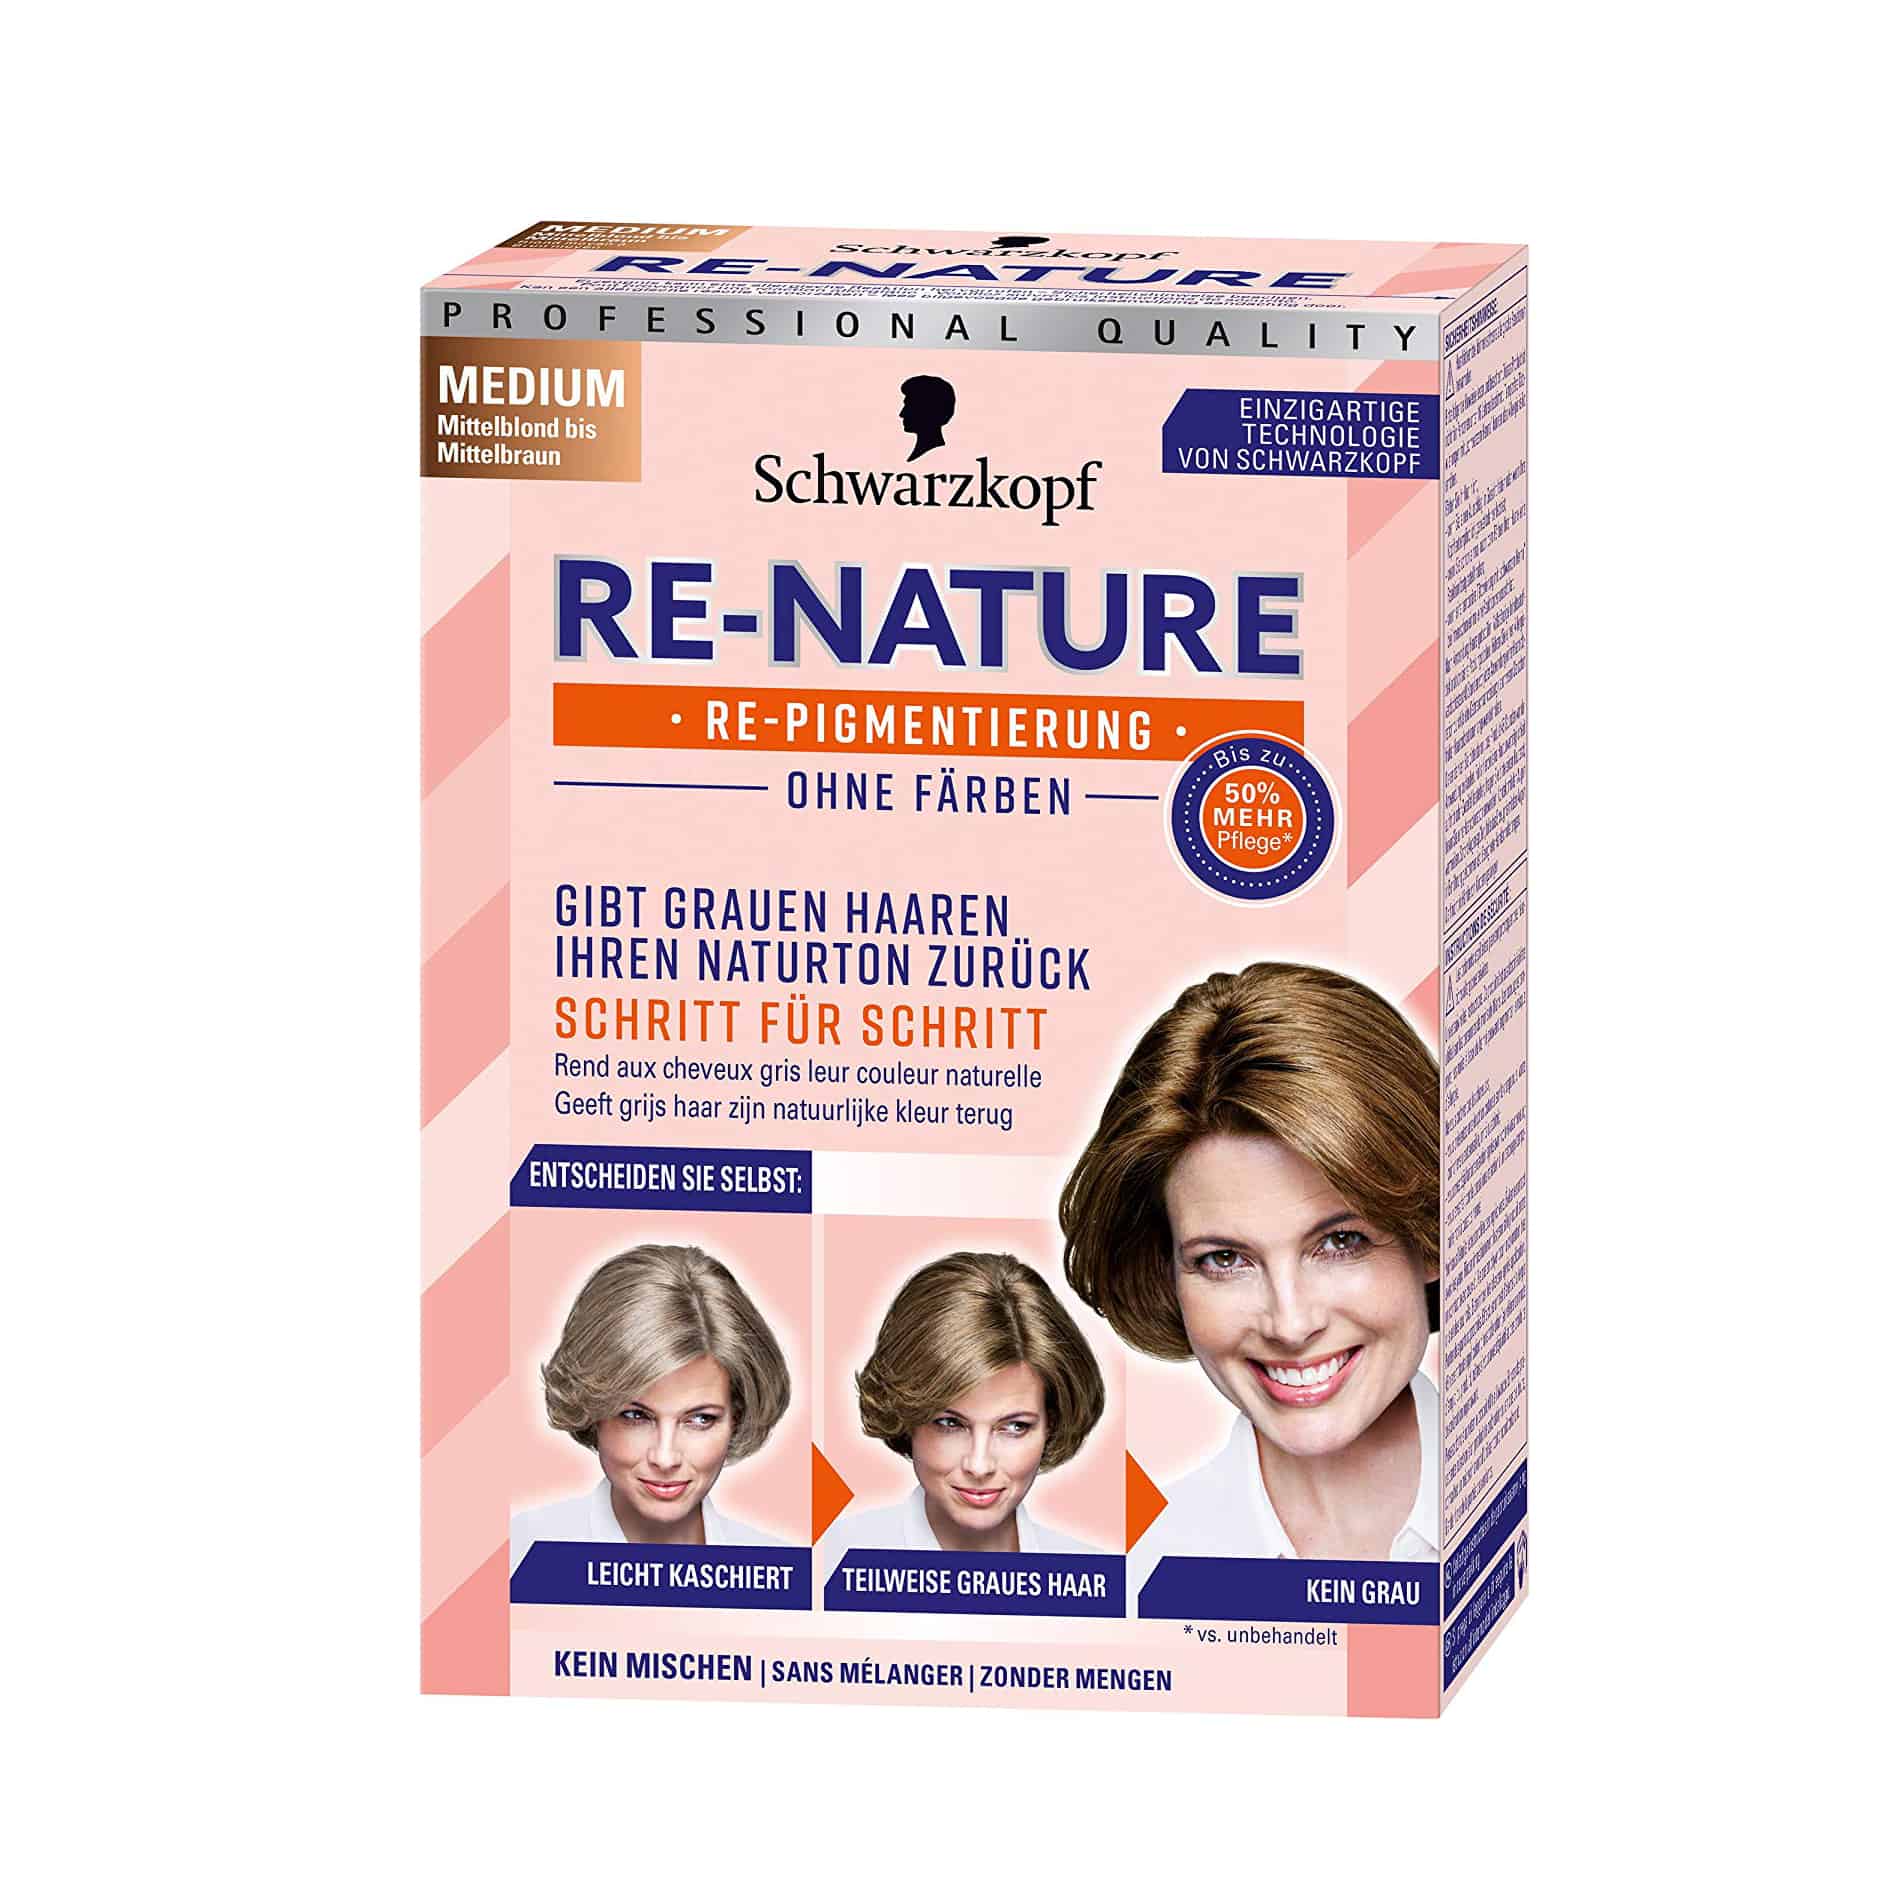 Re-Nature – Anti Gray Hair – Women's Natural Coloring Kit “WOMEN MEDIUM” Buy German